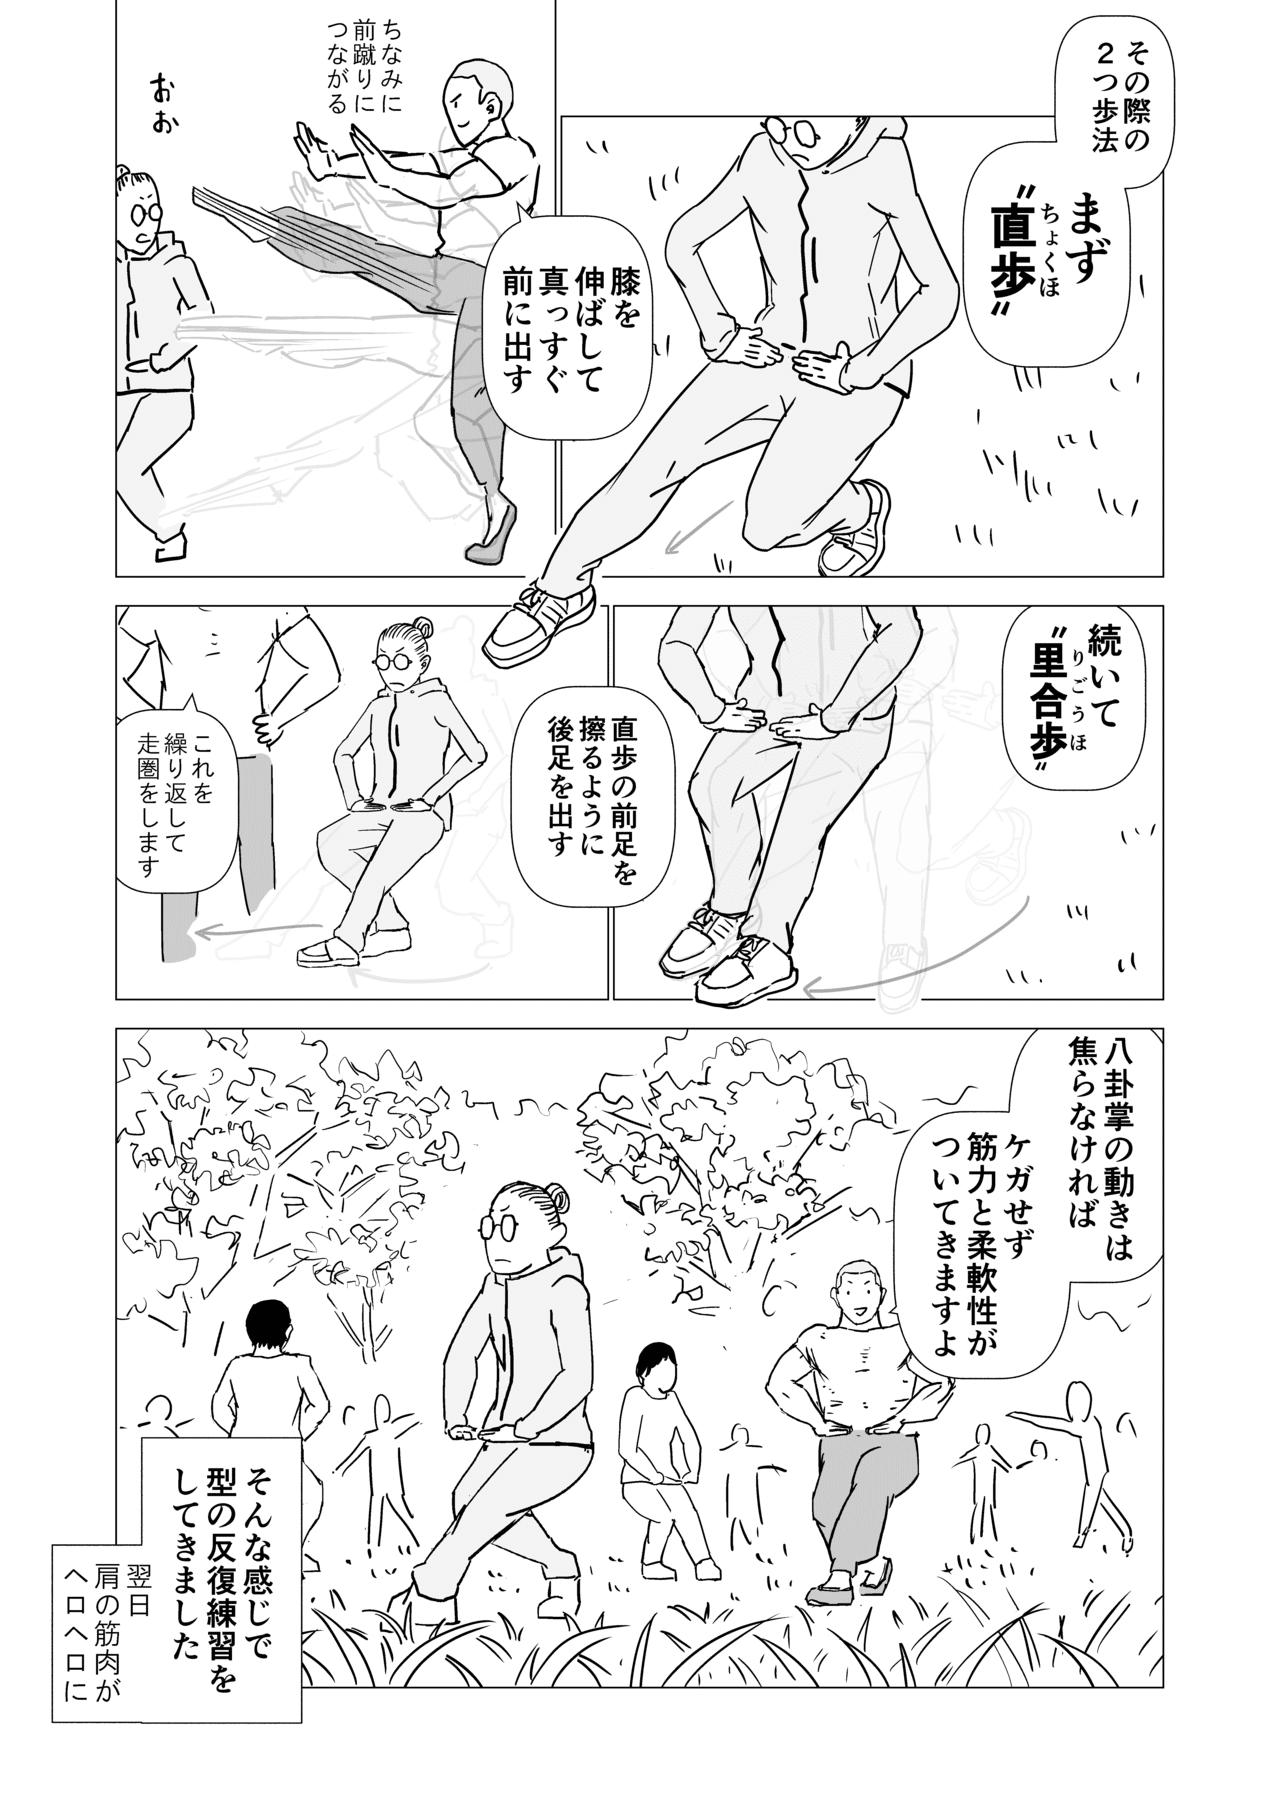 乙女文藝ハッカソン_004